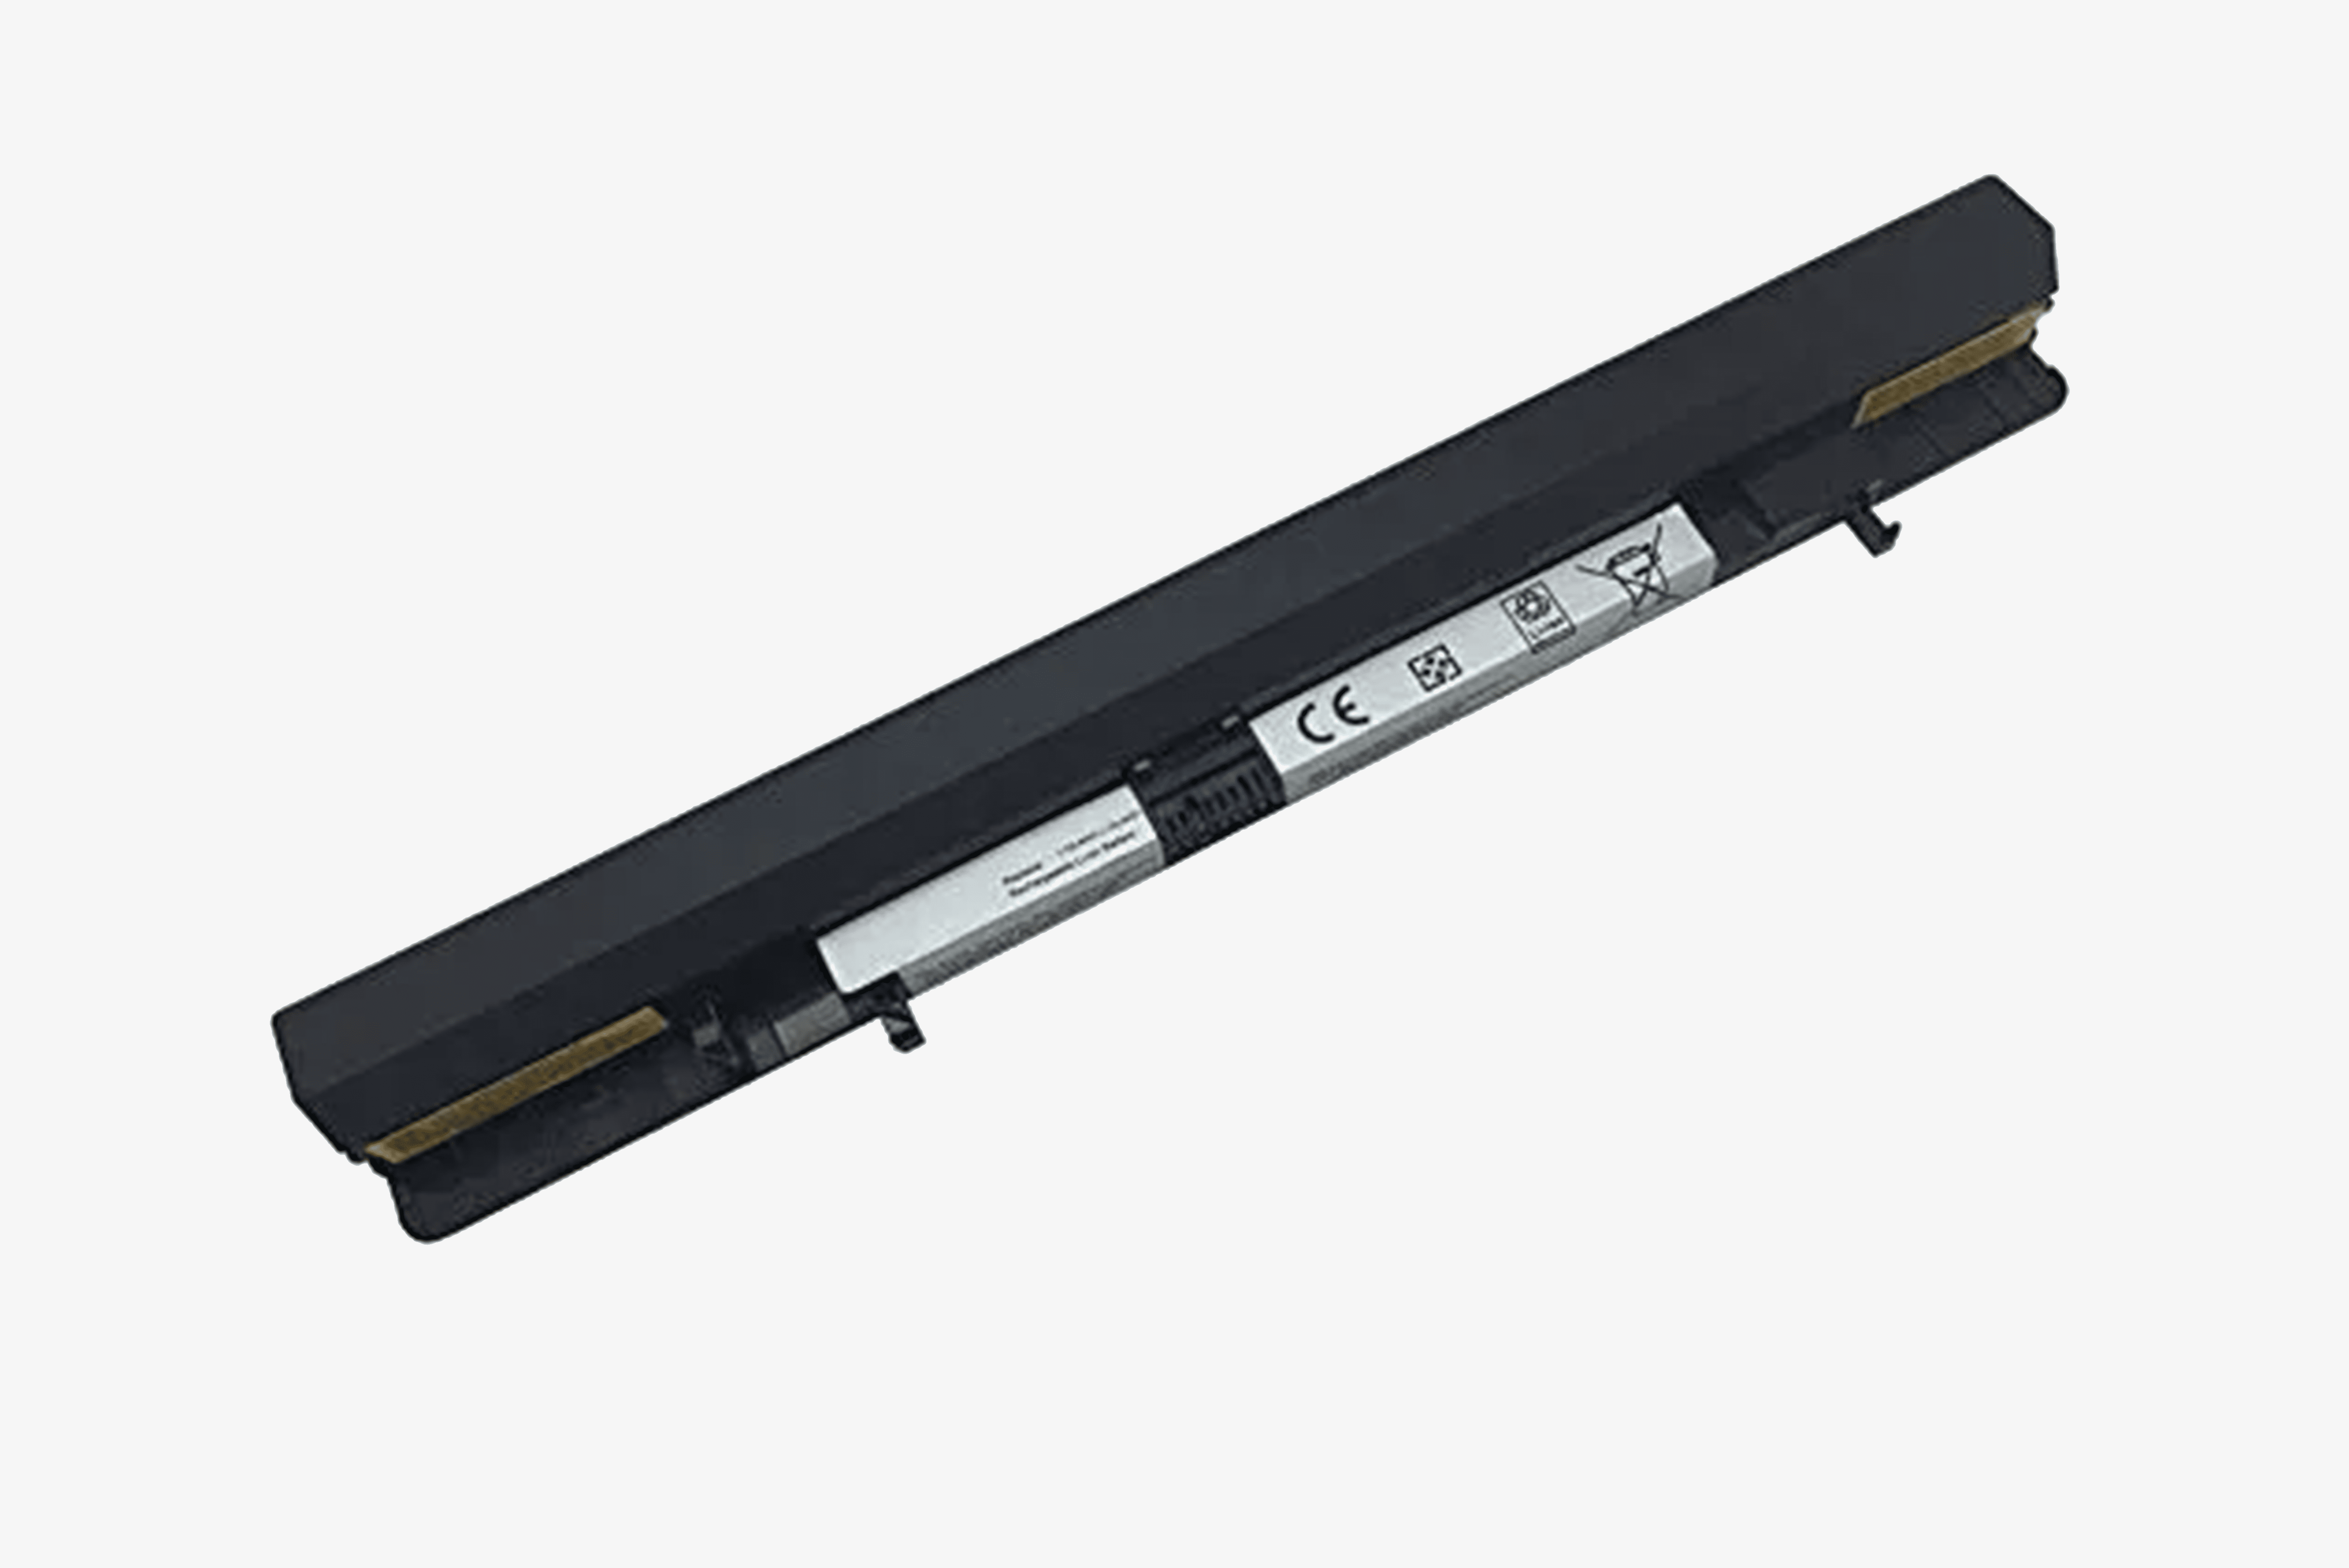 Lenovo IdeaPad S500 Battery